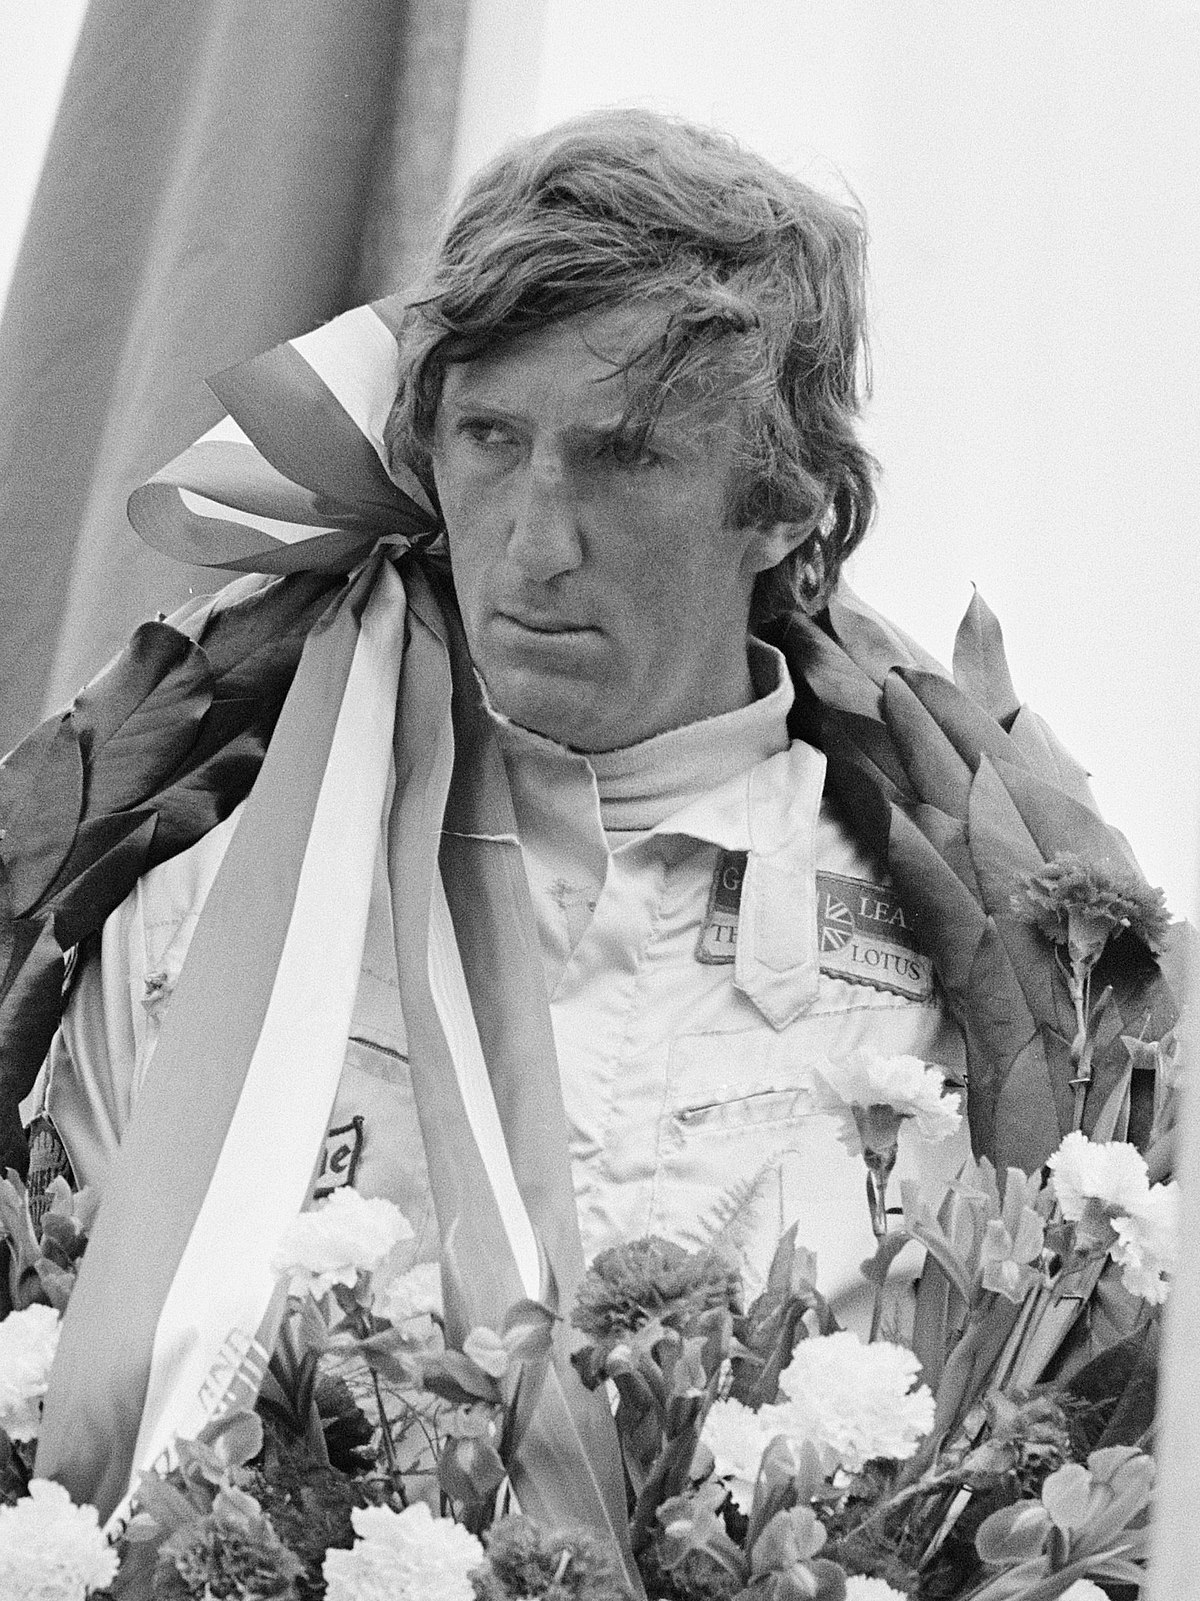 Jochen Rindt var snobbete og arrogant, men et gudebenådet talent bak et ratt. 